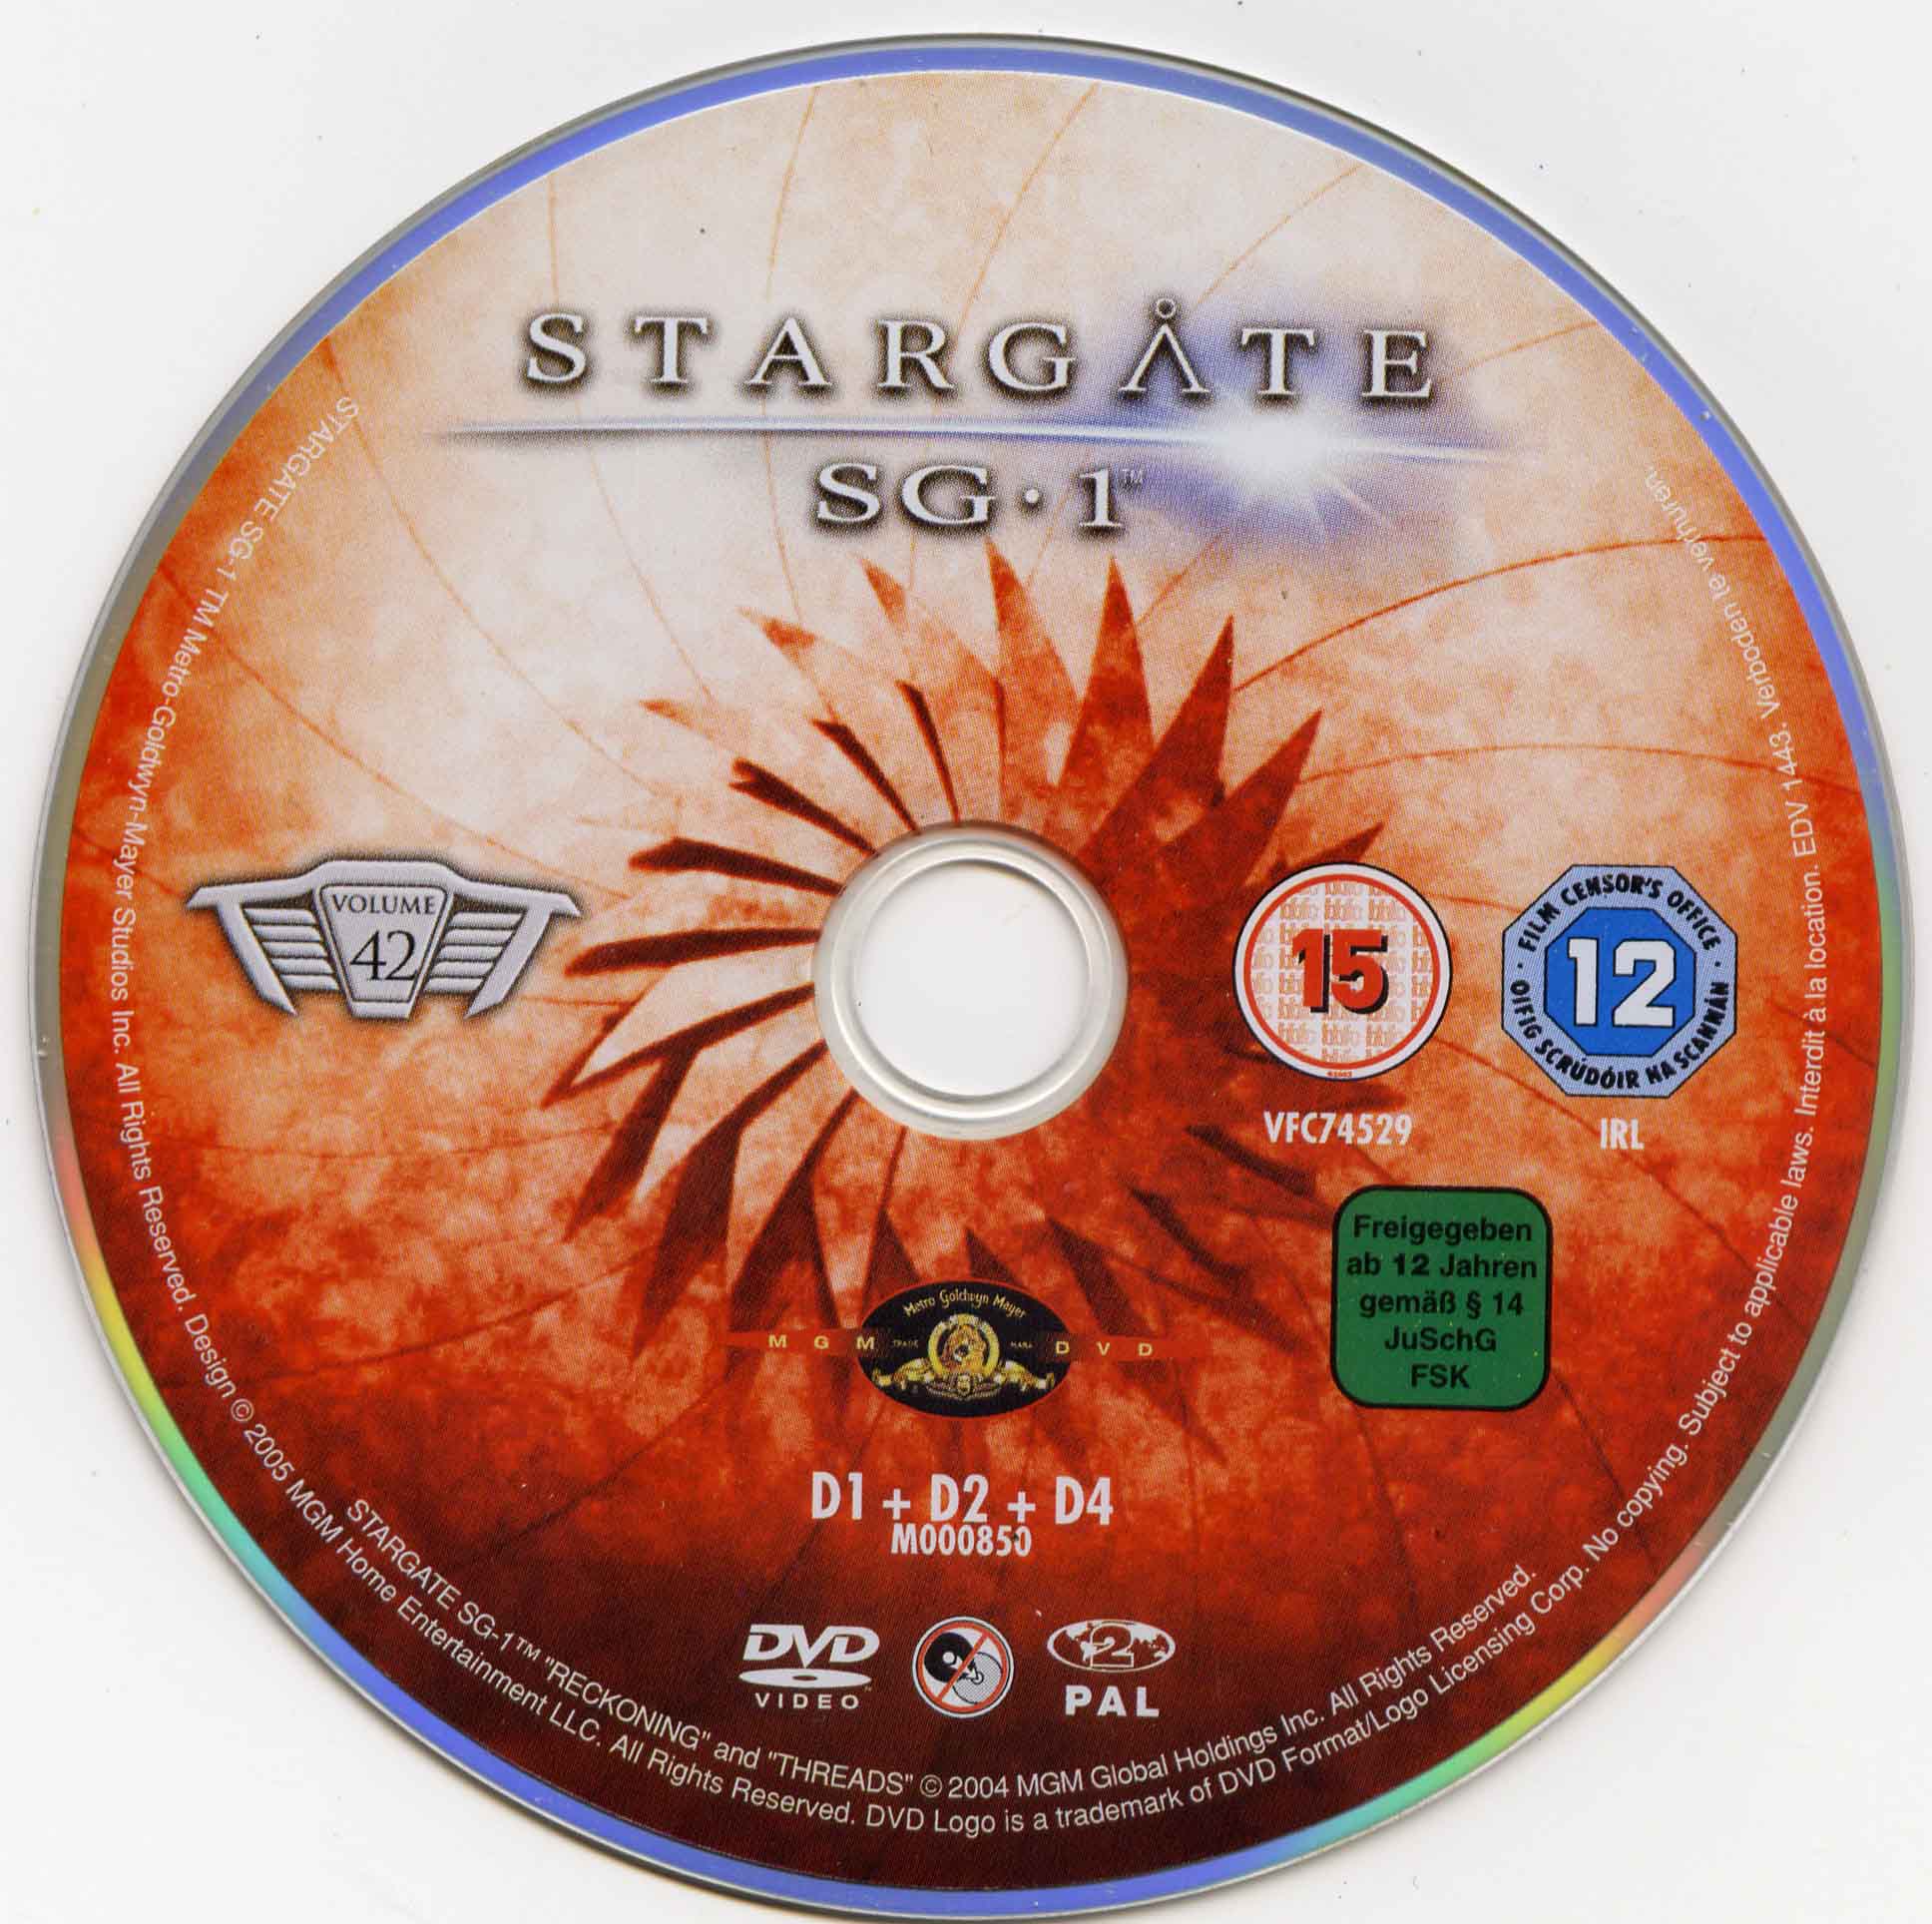 Stargate SG1 vol 42